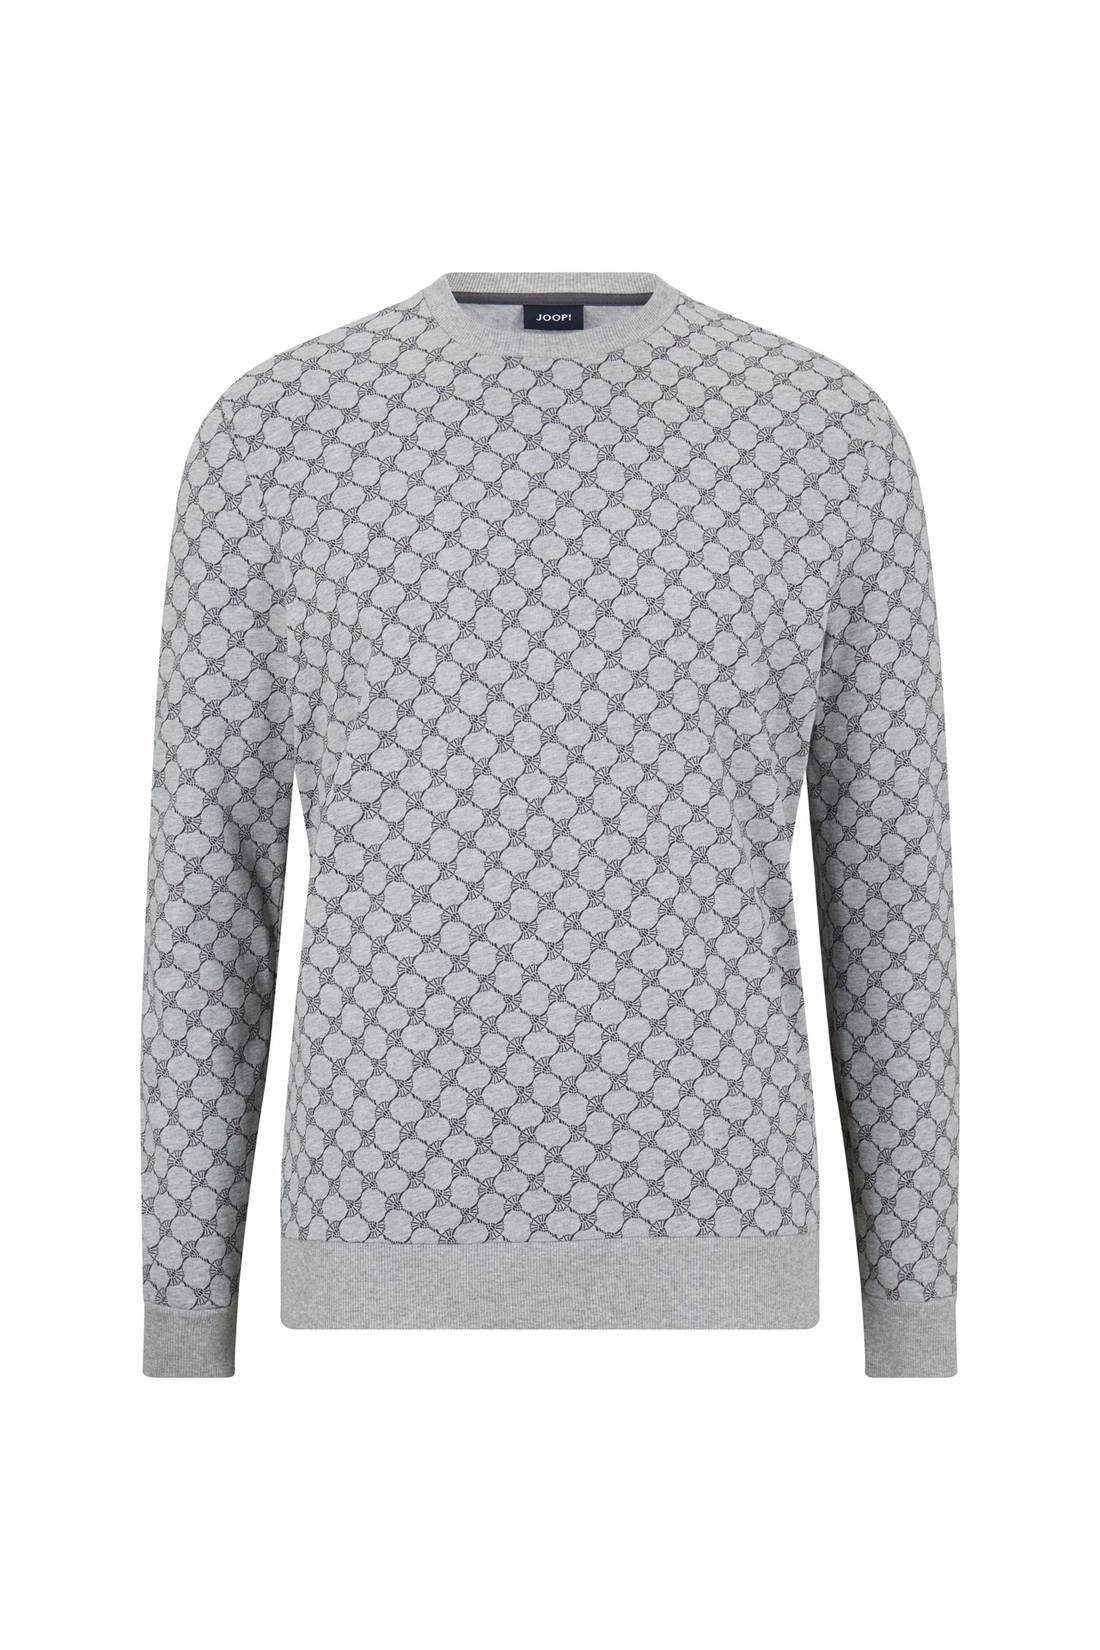 Joop! Sweatshirt »Herren Sweatshirt - Loungewear, Rundhals,« online kaufen  | OTTO